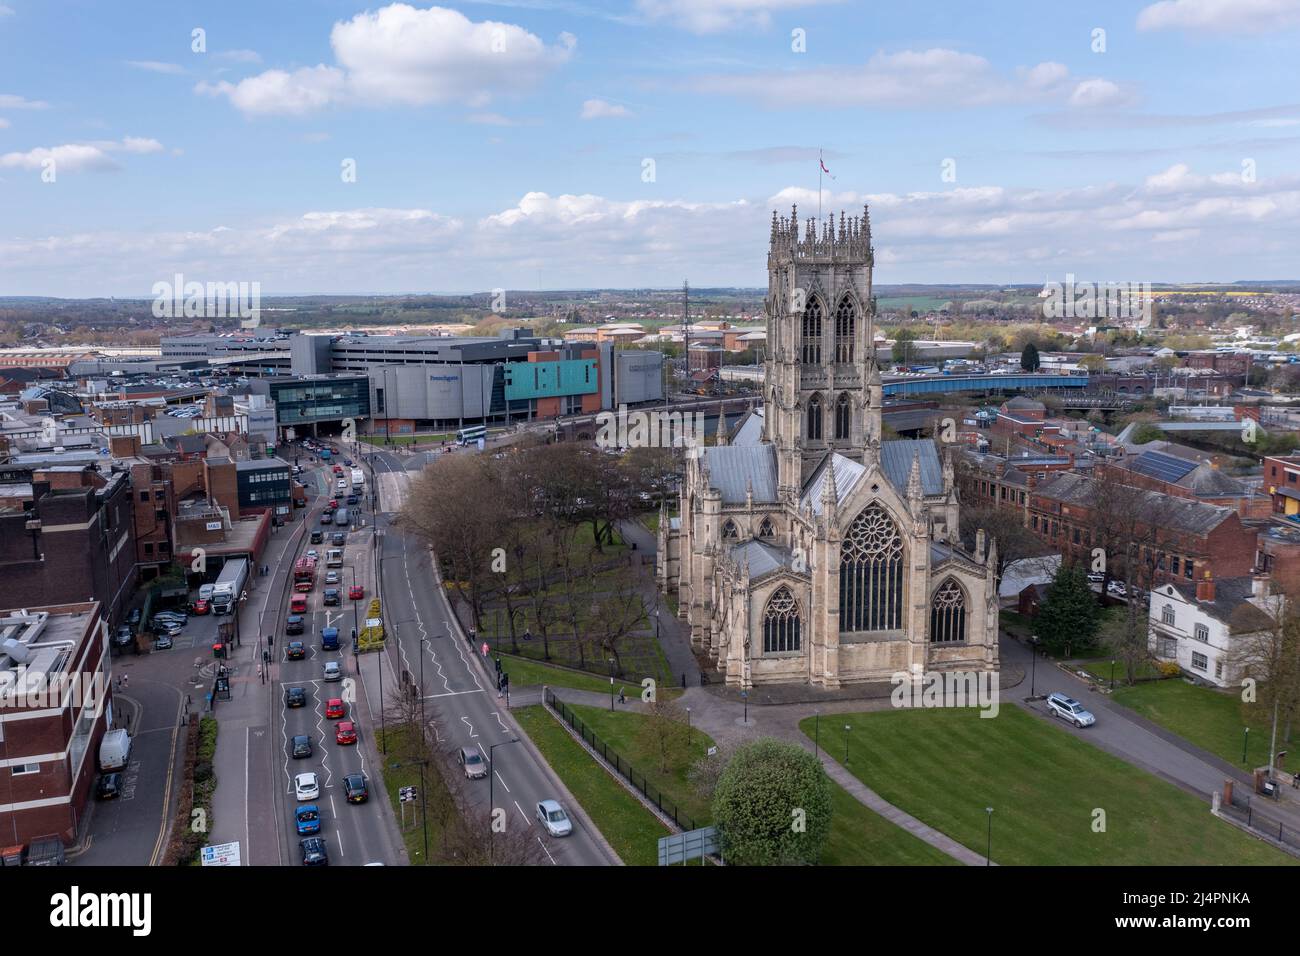 Una vista panoramica aerea della Chiesa di San Giorgio Minster in un paesaggio urbano del centro di Doncaster con il centro commerciale Frenchgate Center Foto Stock